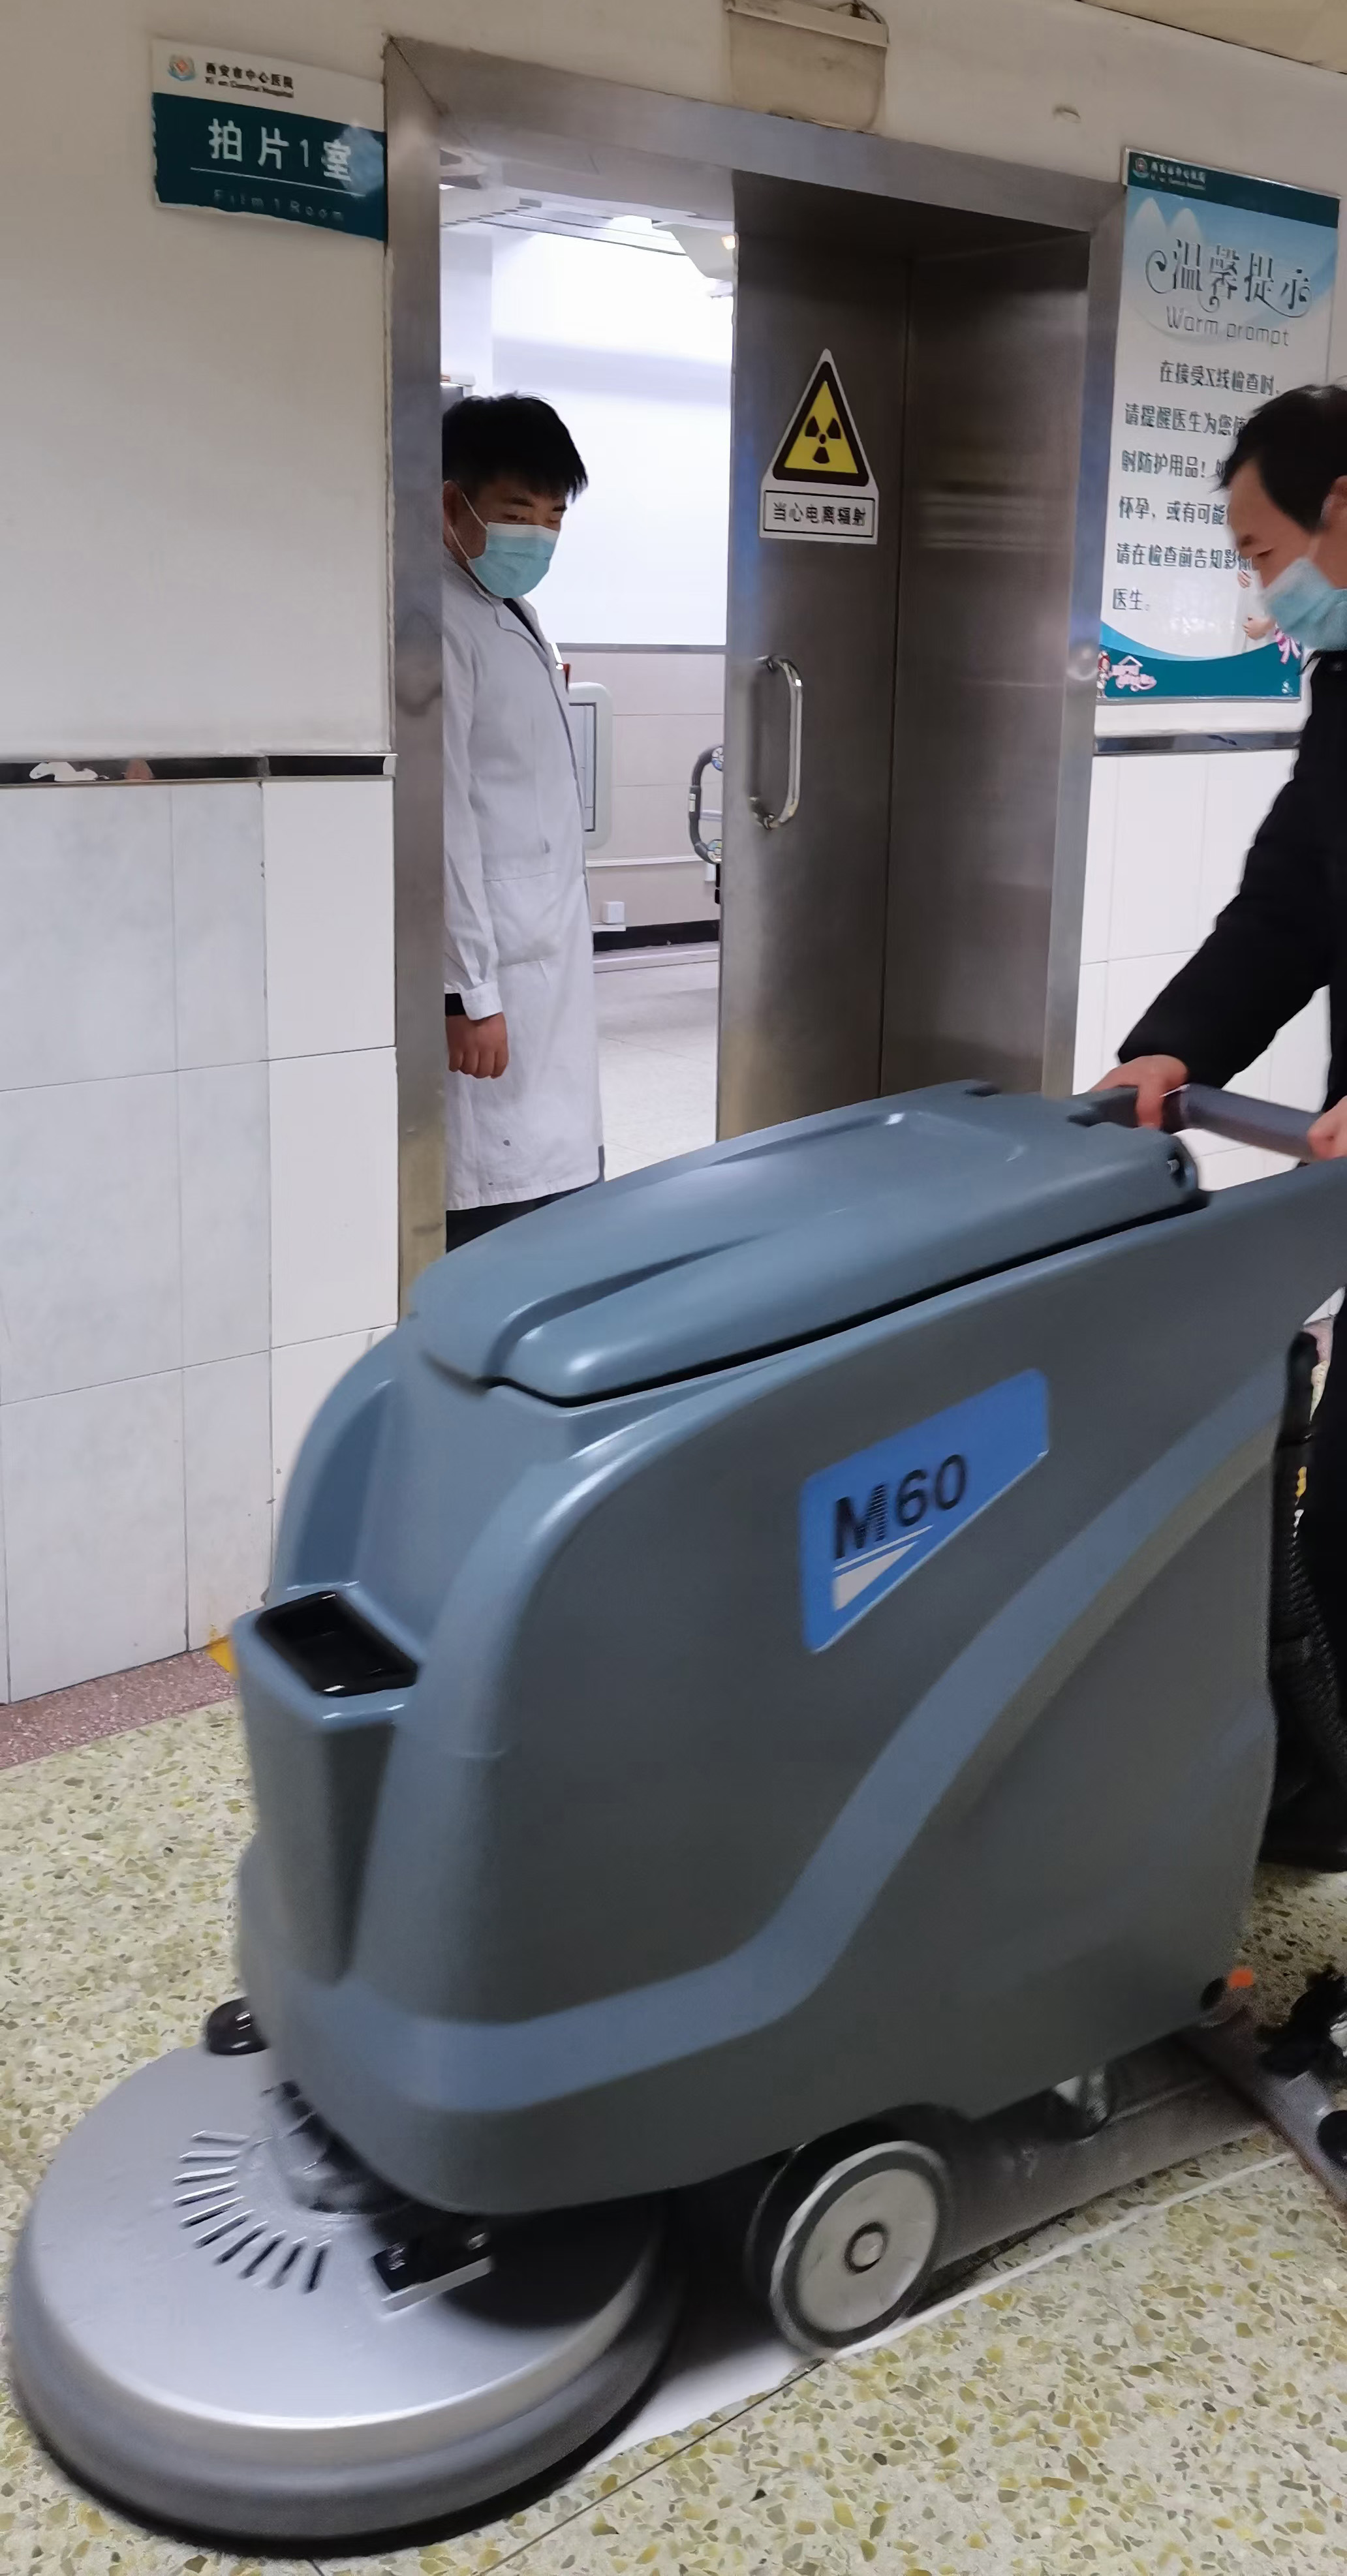 西安交大附属医院采购洗地机选择了高乐美公司